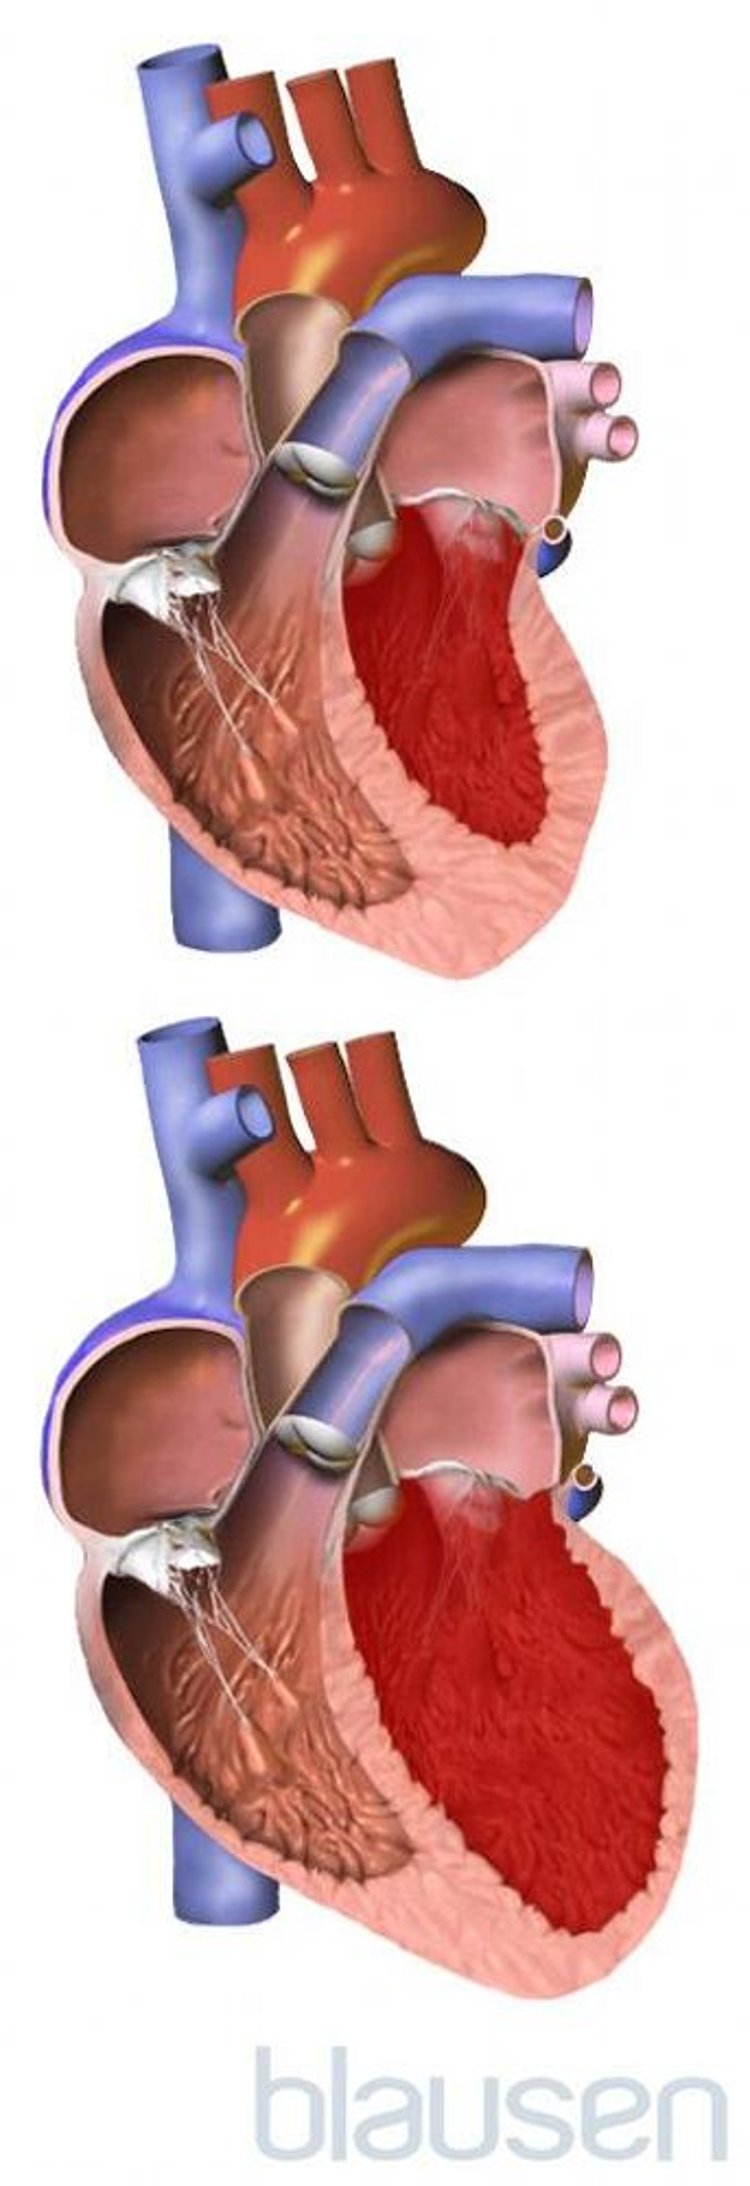 Coração normal versus coração aumentado